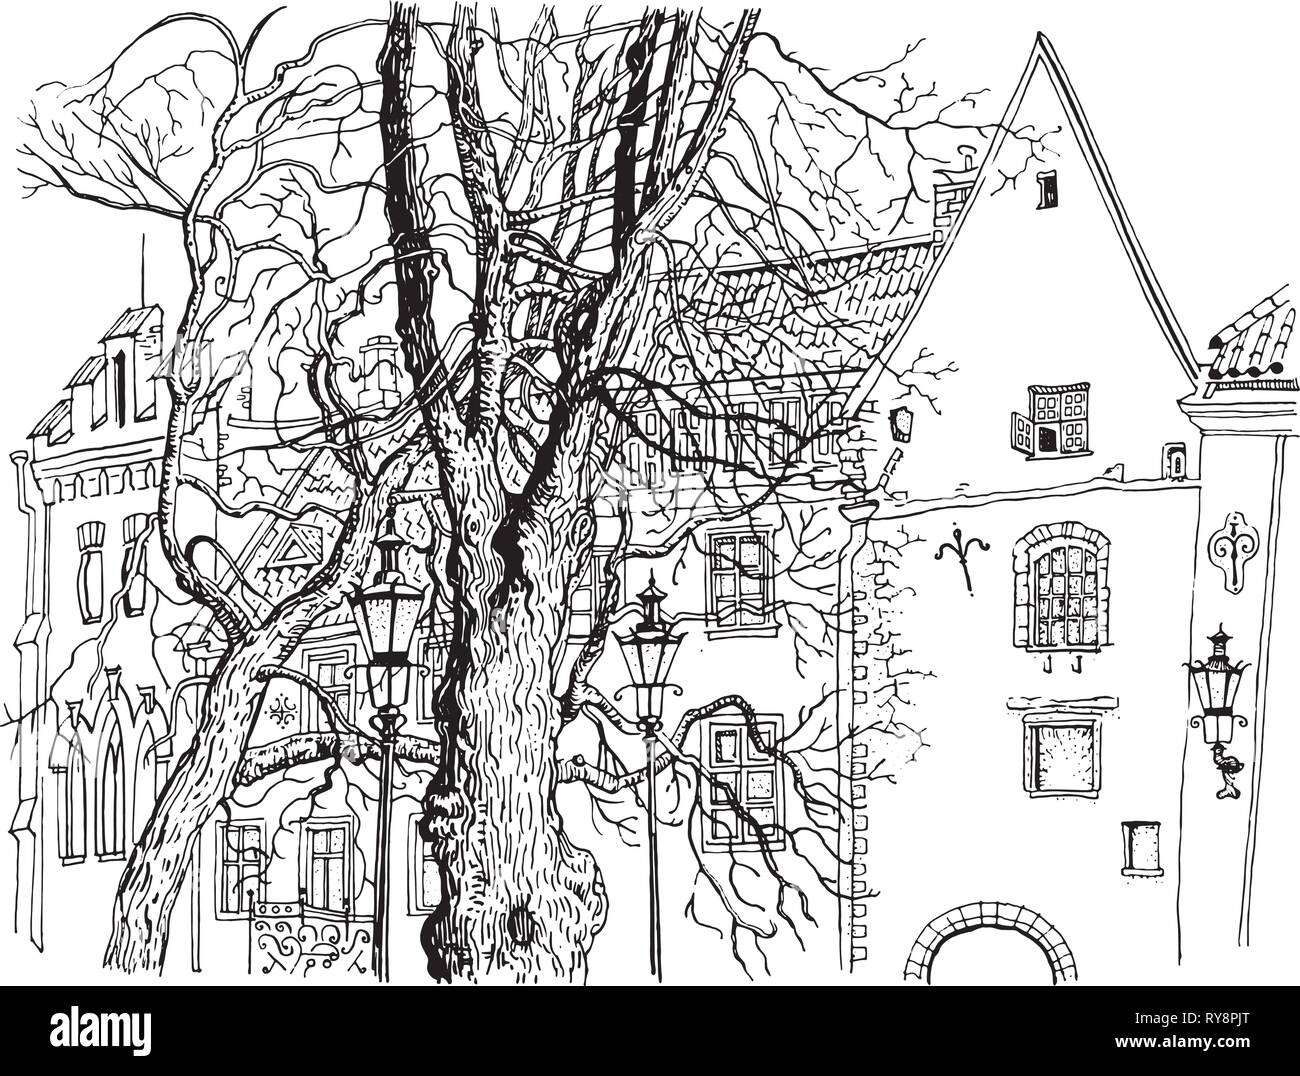 Blick auf die Altstadt von Tallinn. Olevimagi Street. Handgezeichneten Grafikstil Kugelschreiber Abbildung. Historische Architektur, mittelalterlichen Häuser, Bäume. Baltischen Staaten Stock Vektor